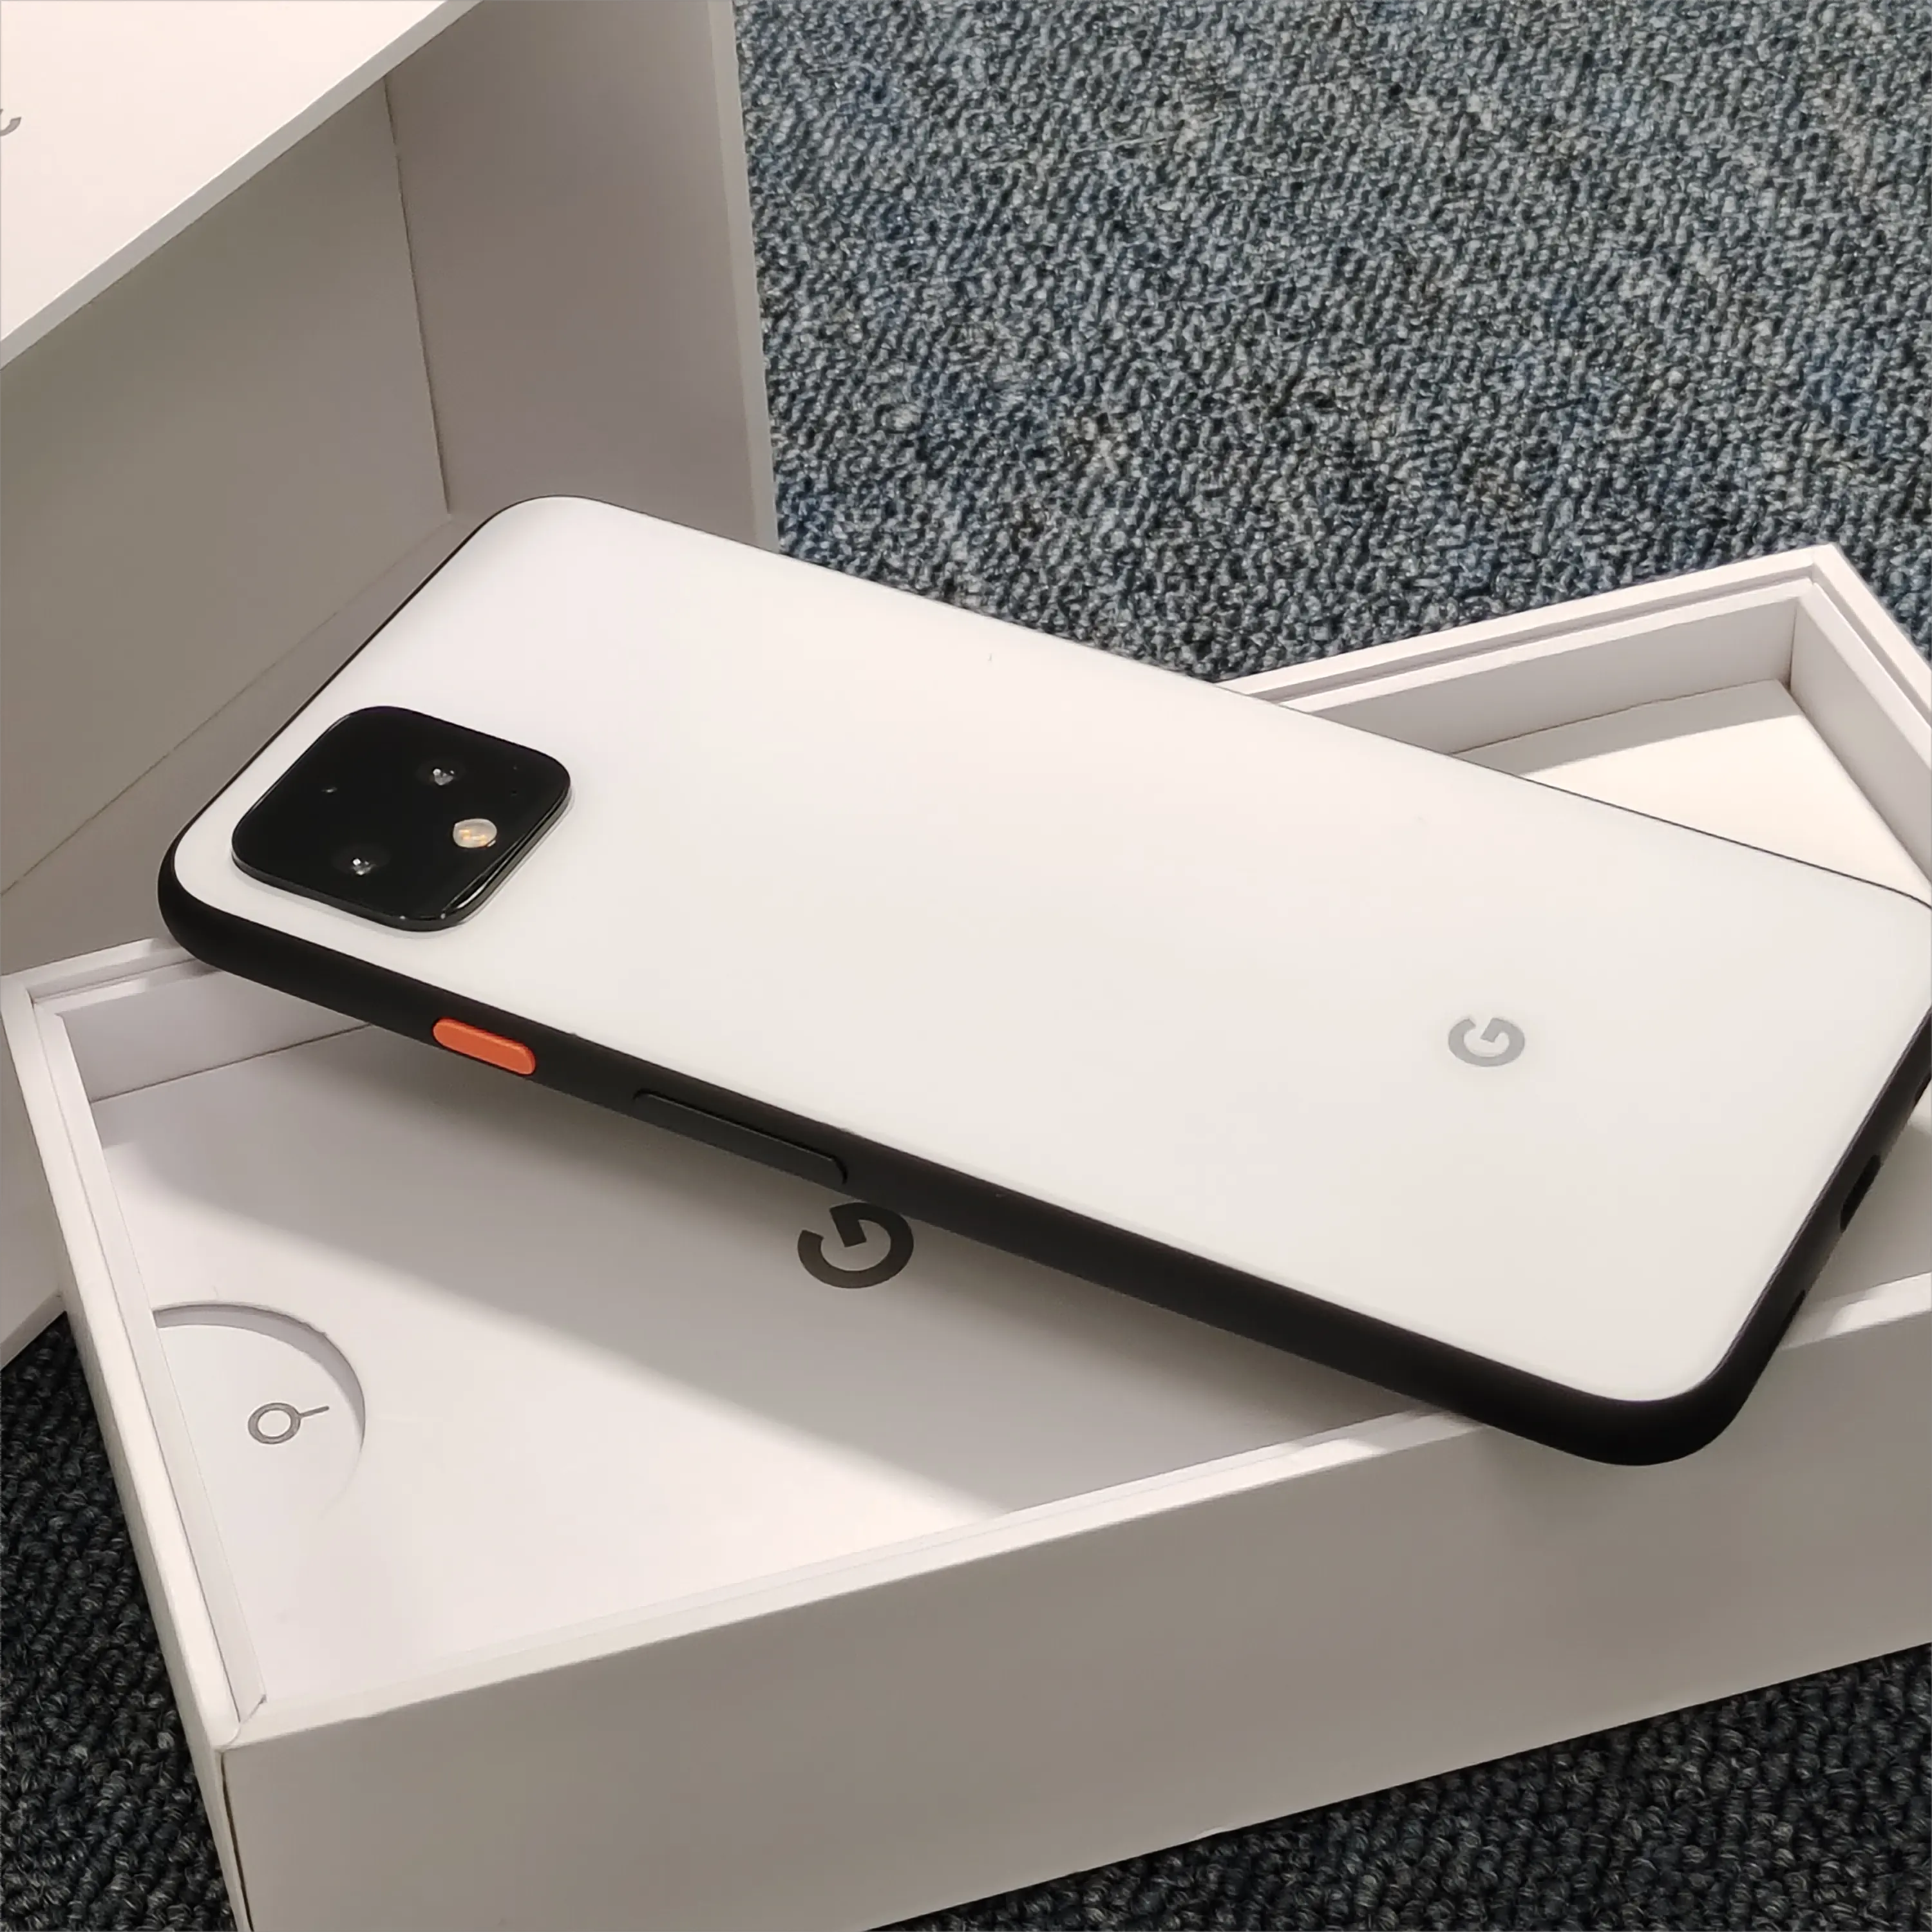 Google Pixel 4 फ़ोन के लिए बिल्कुल नया मूल 6+128GB मूल सेल्यूलर मोबाइल फ़ोन Google Pixel 4 5.7 इंच स्मार्टफ़ोन के लिए